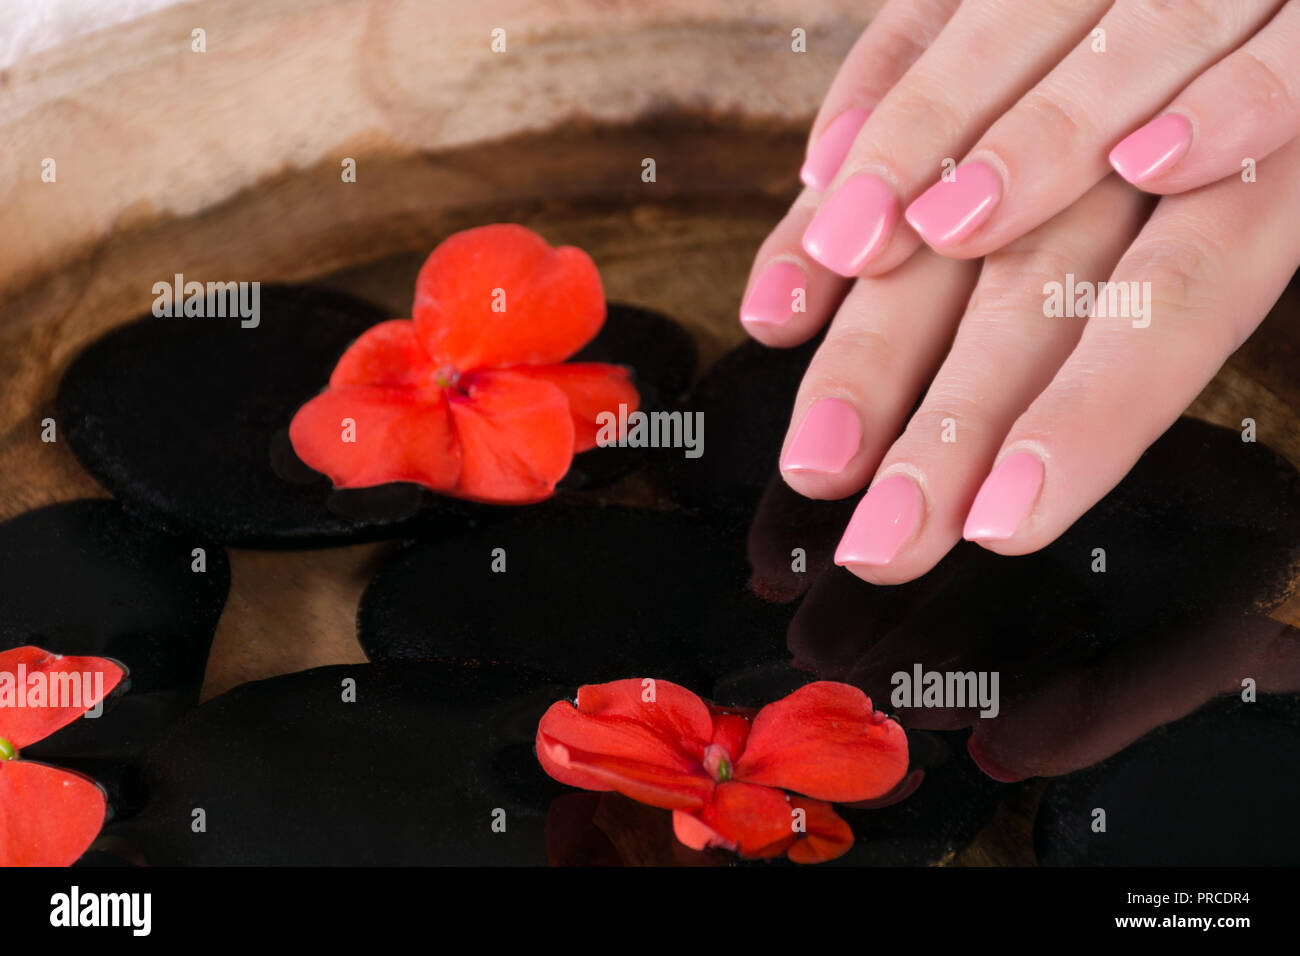 Donna dito con rosa unghie manicure gel polacco al di sopra dell'acqua con fiori di colore rosso e la pietra nera nella ciotola di legno. Close up, il fuoco selettivo Foto Stock